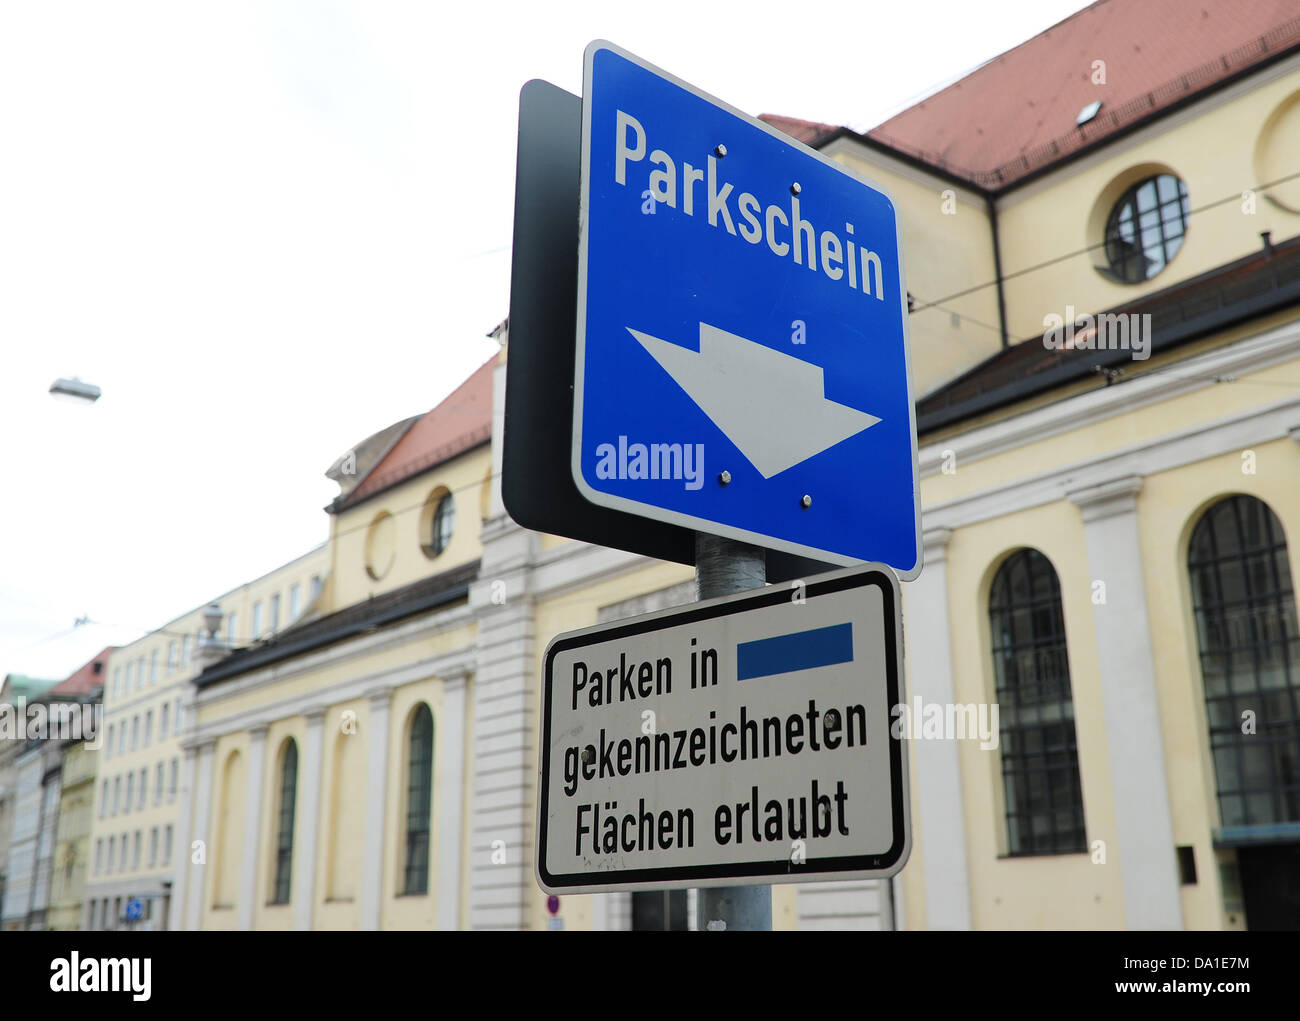 Ein blaues Schild für ein Parkautomat ist in München, 21. Juni